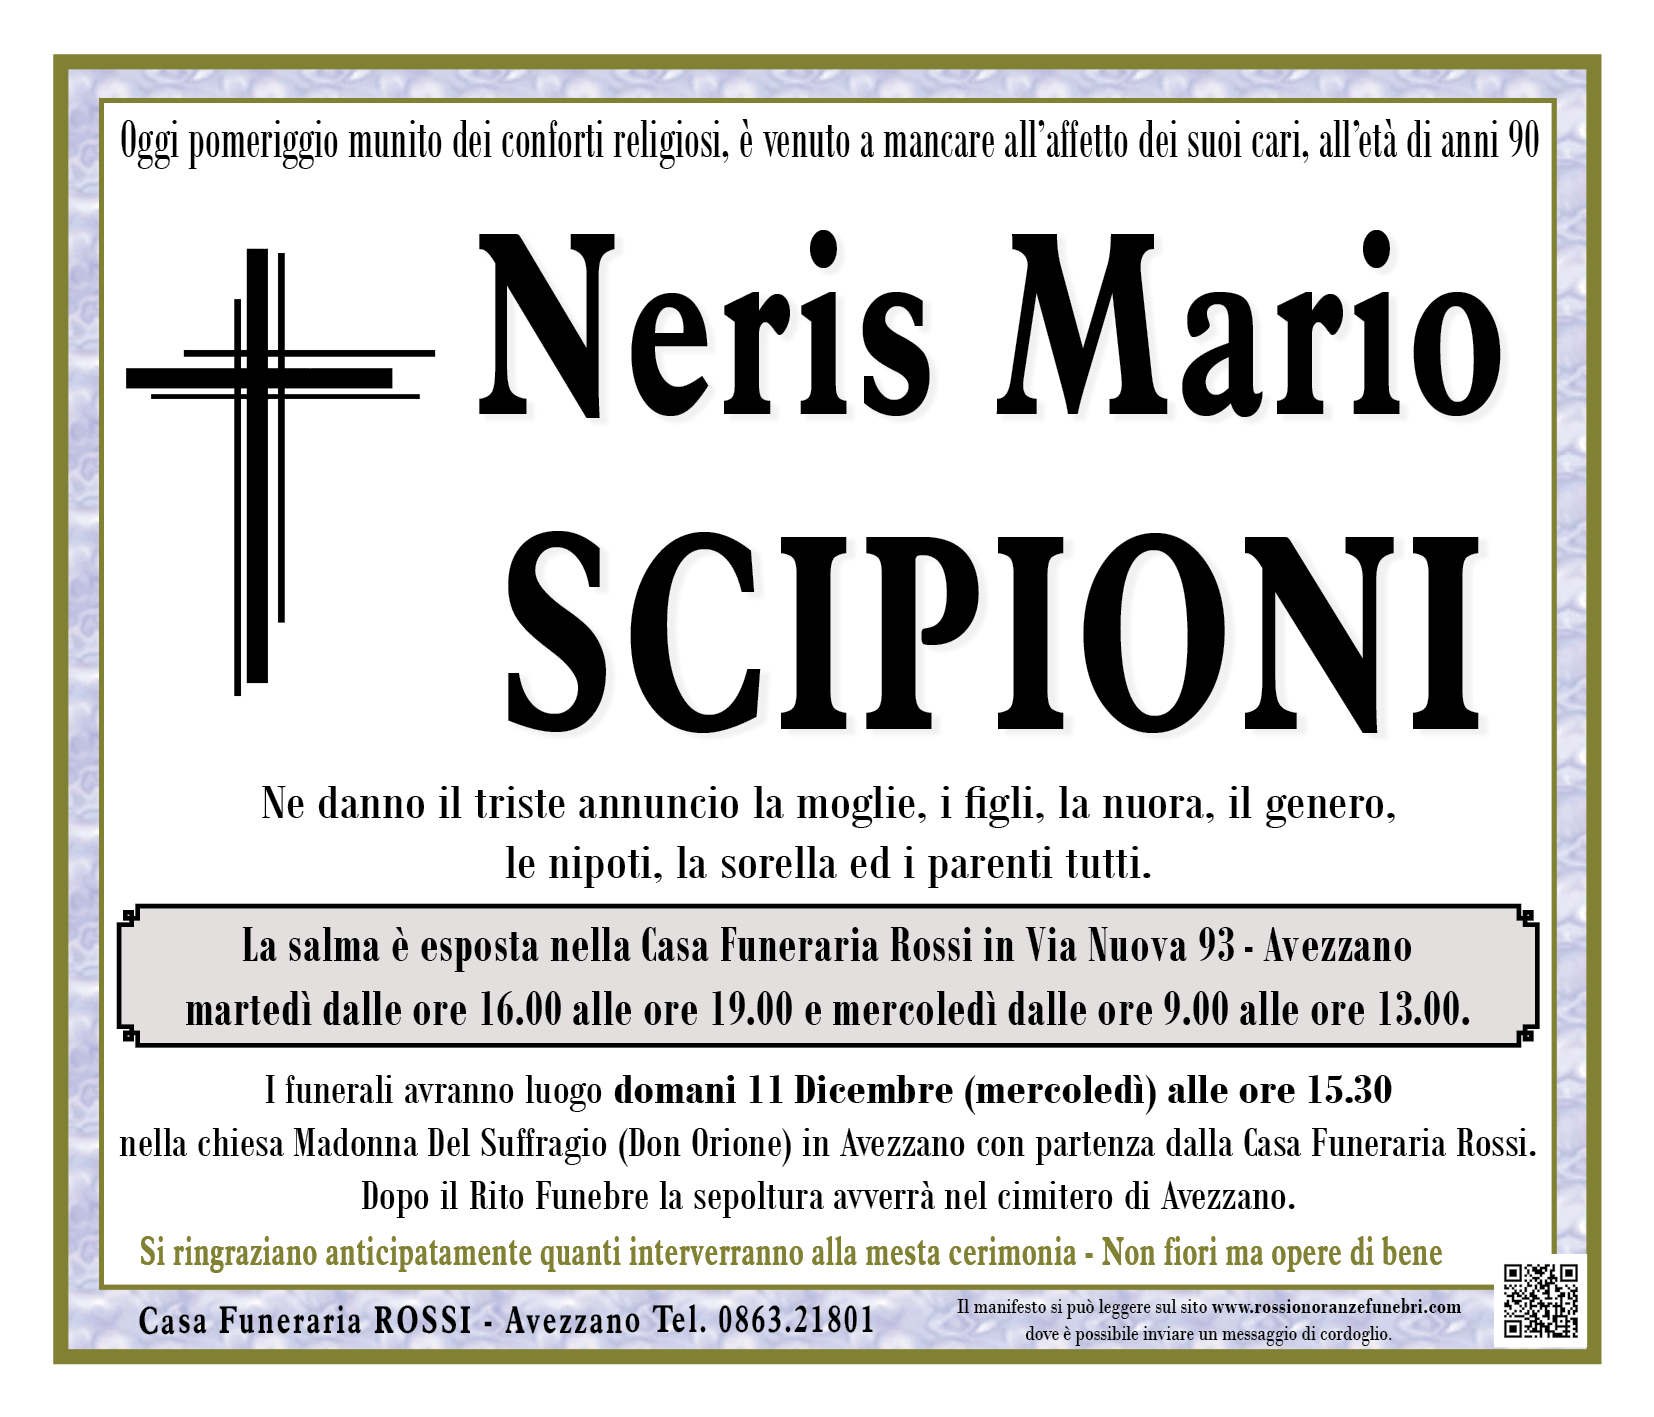 Neris Mario Scipioni